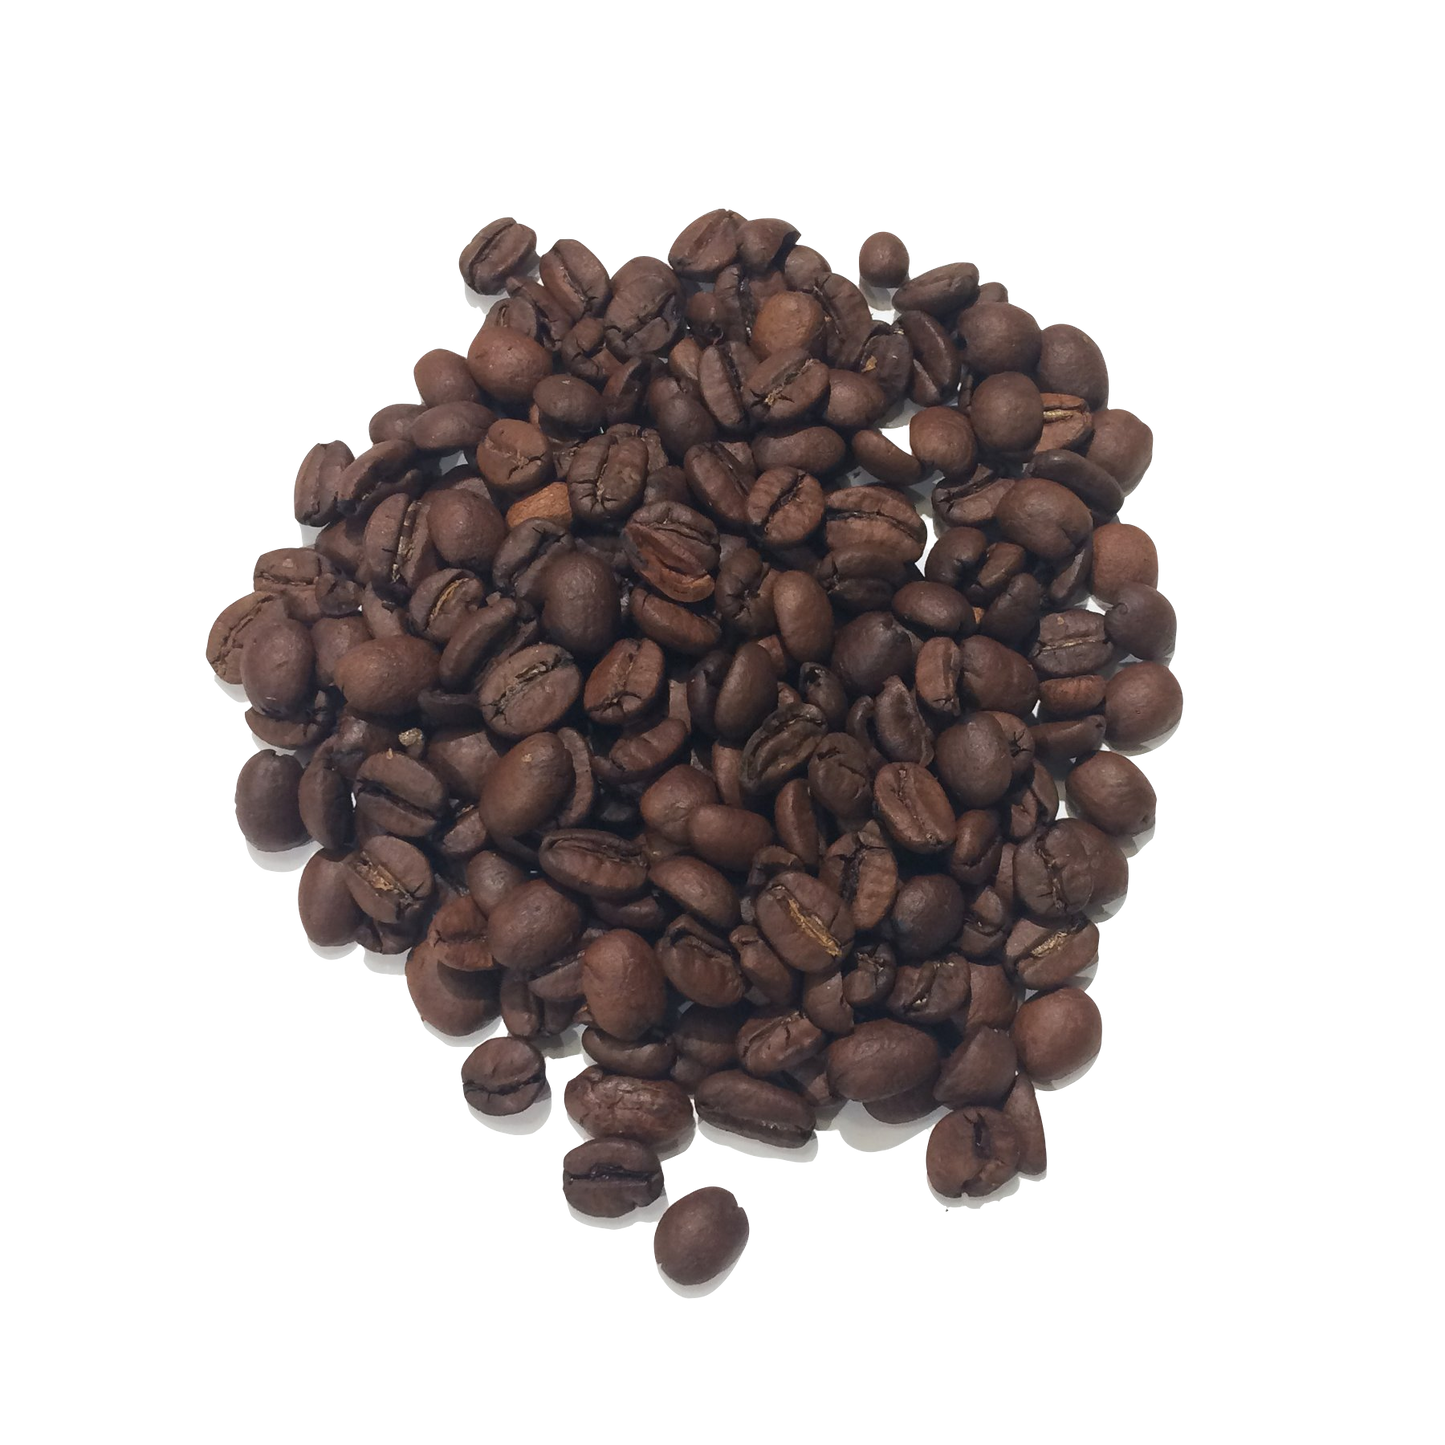 Koffie Tiramisu